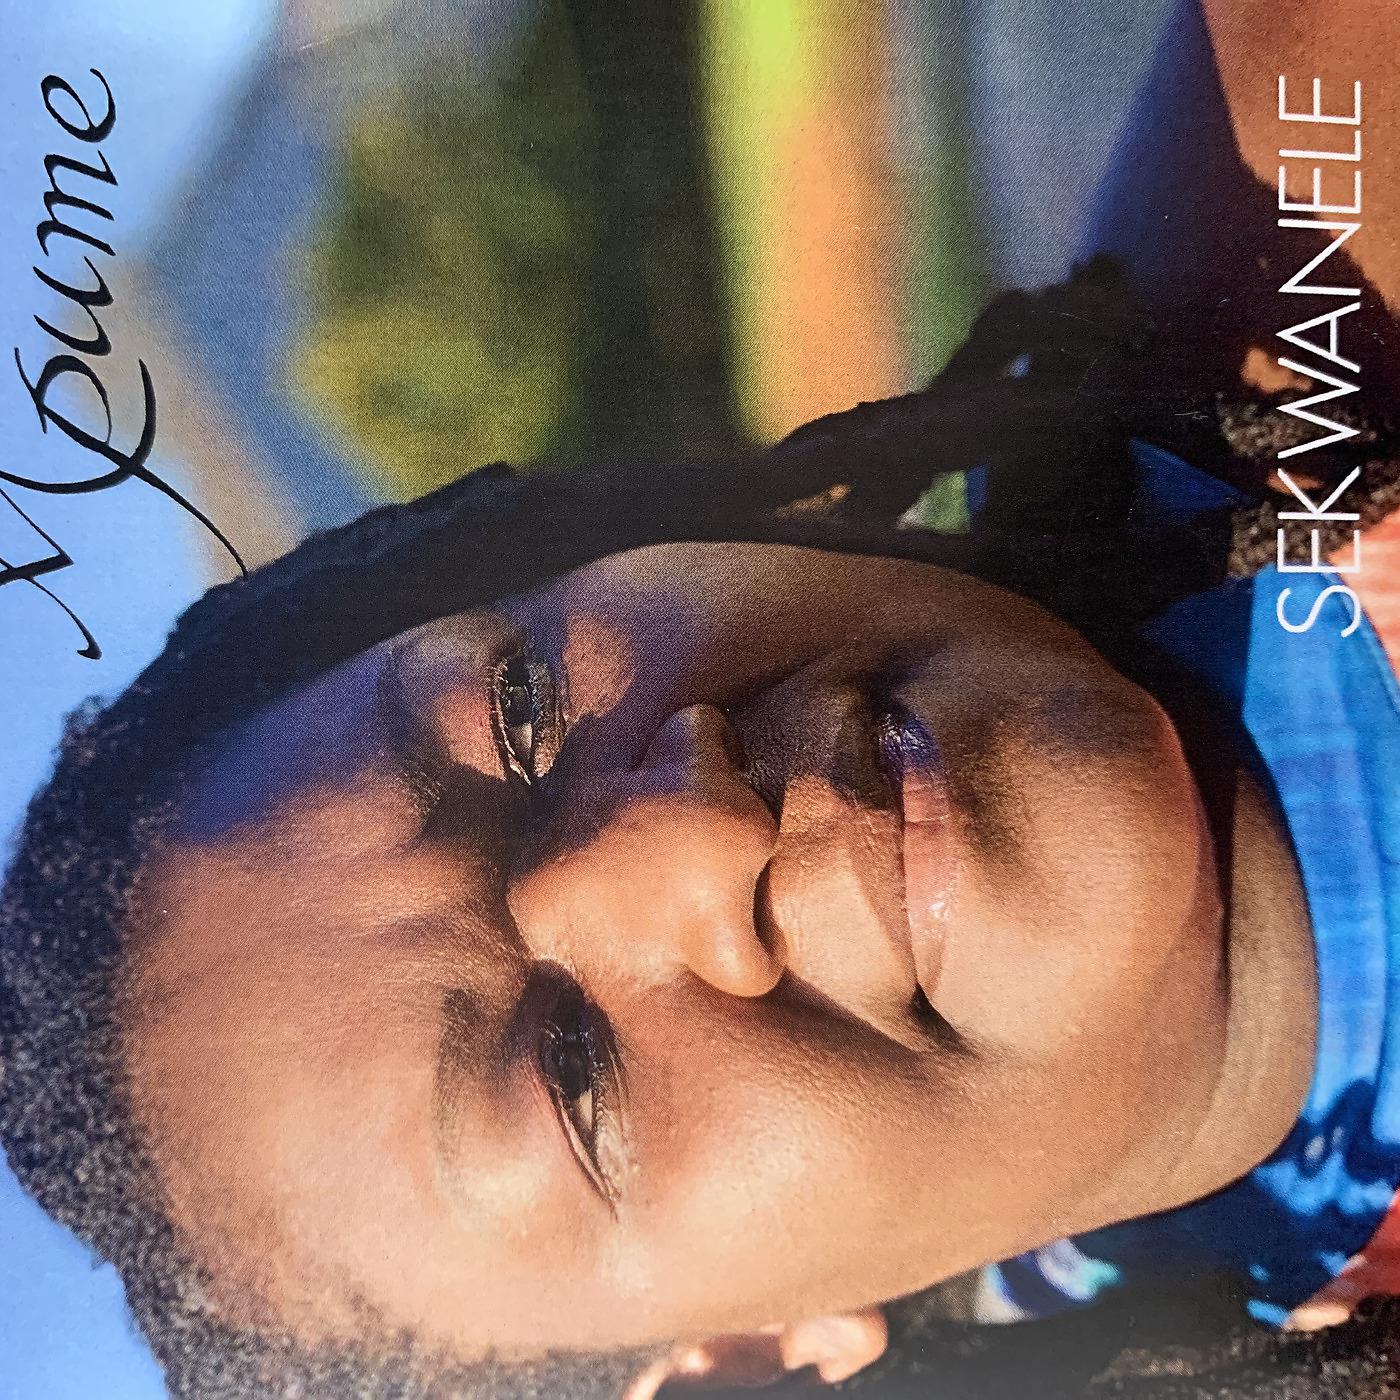 Постер альбома Sekwanele